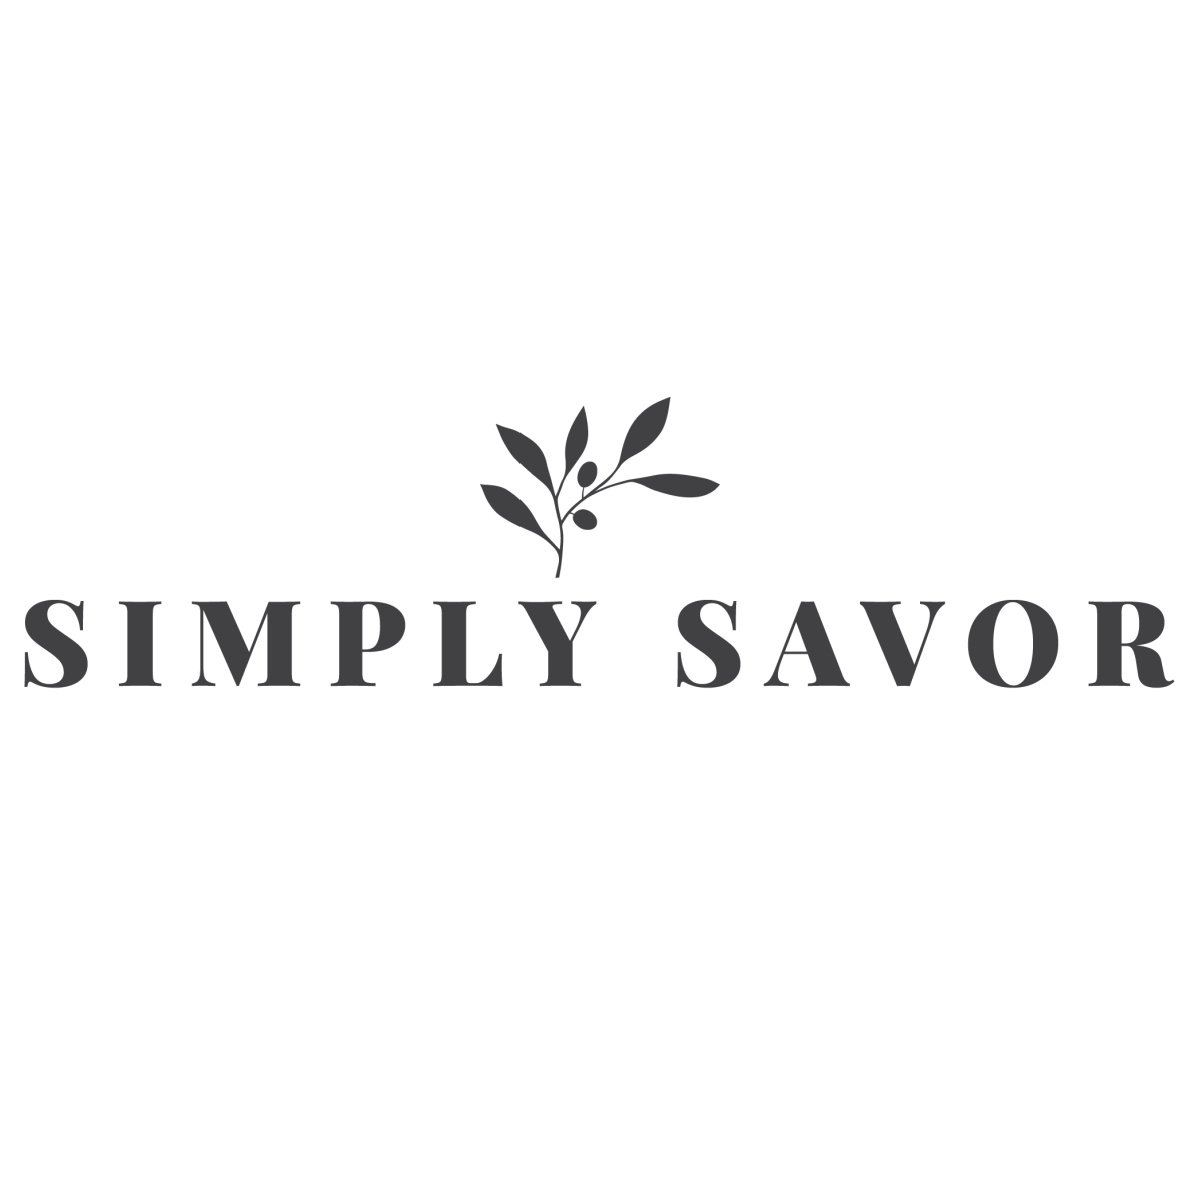 Simply Savor logo